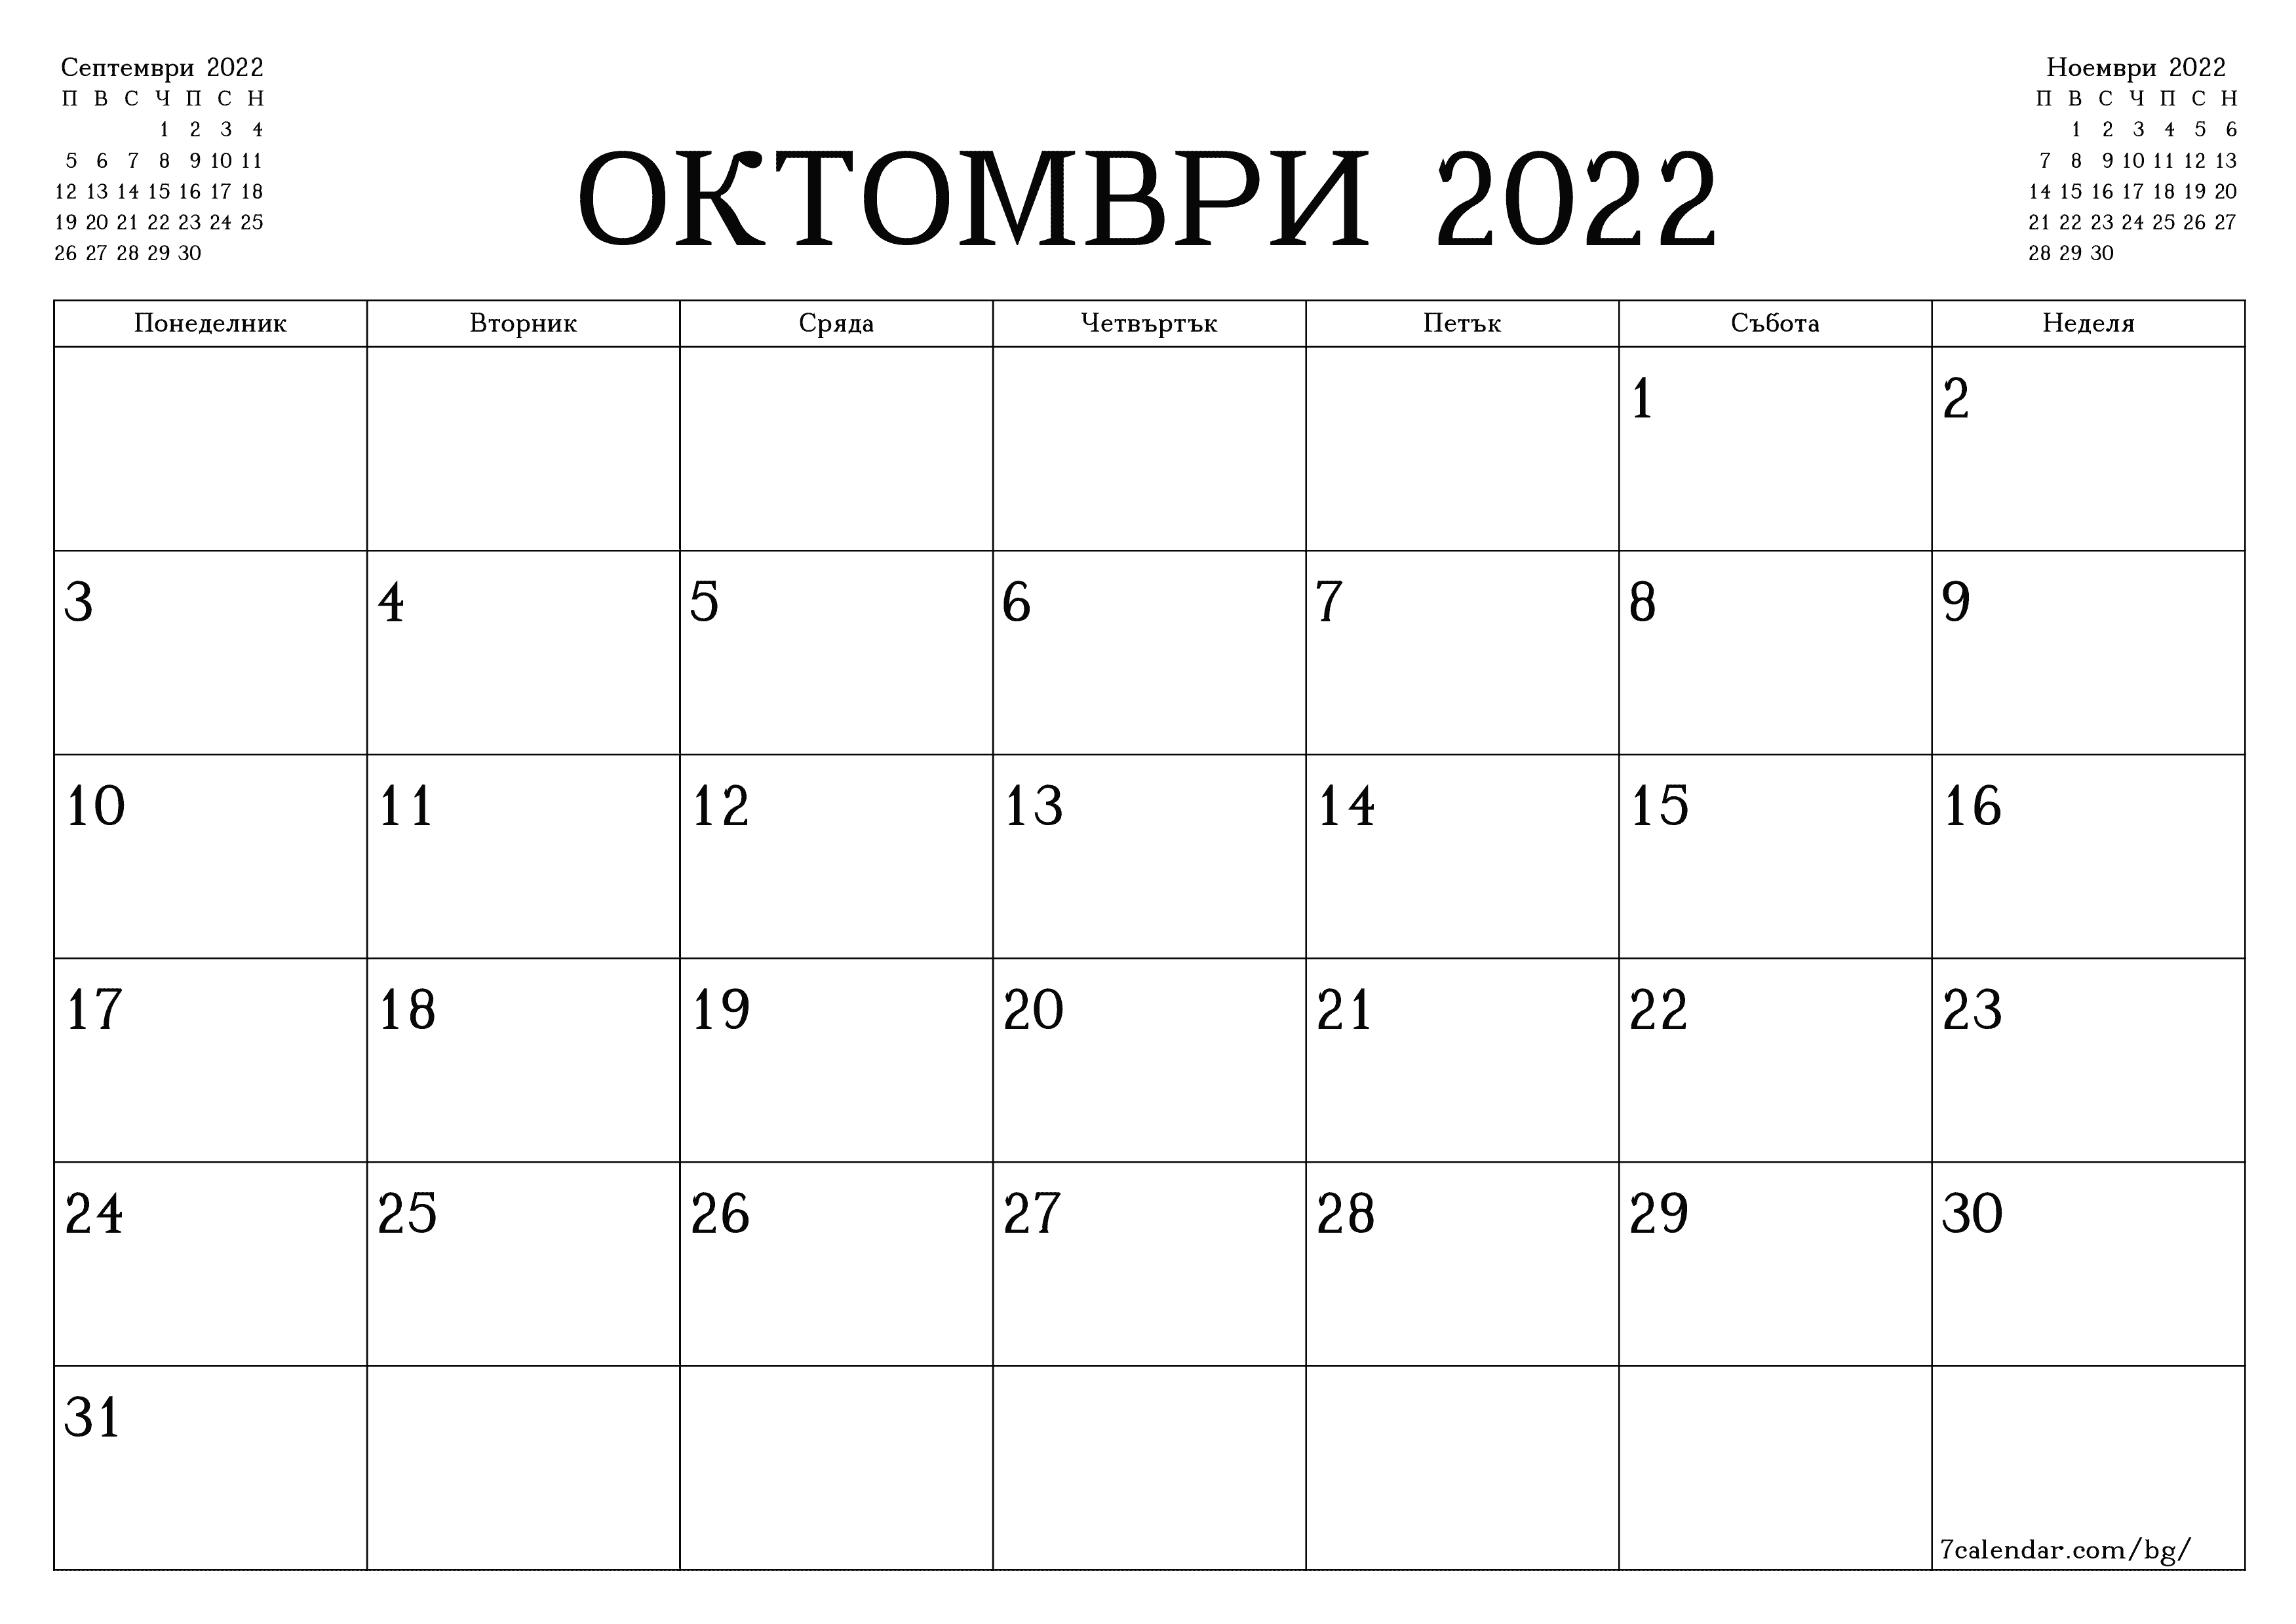 Данъчно-осигурителен календар от 22-ри до 28-ми октомври 2022 г.